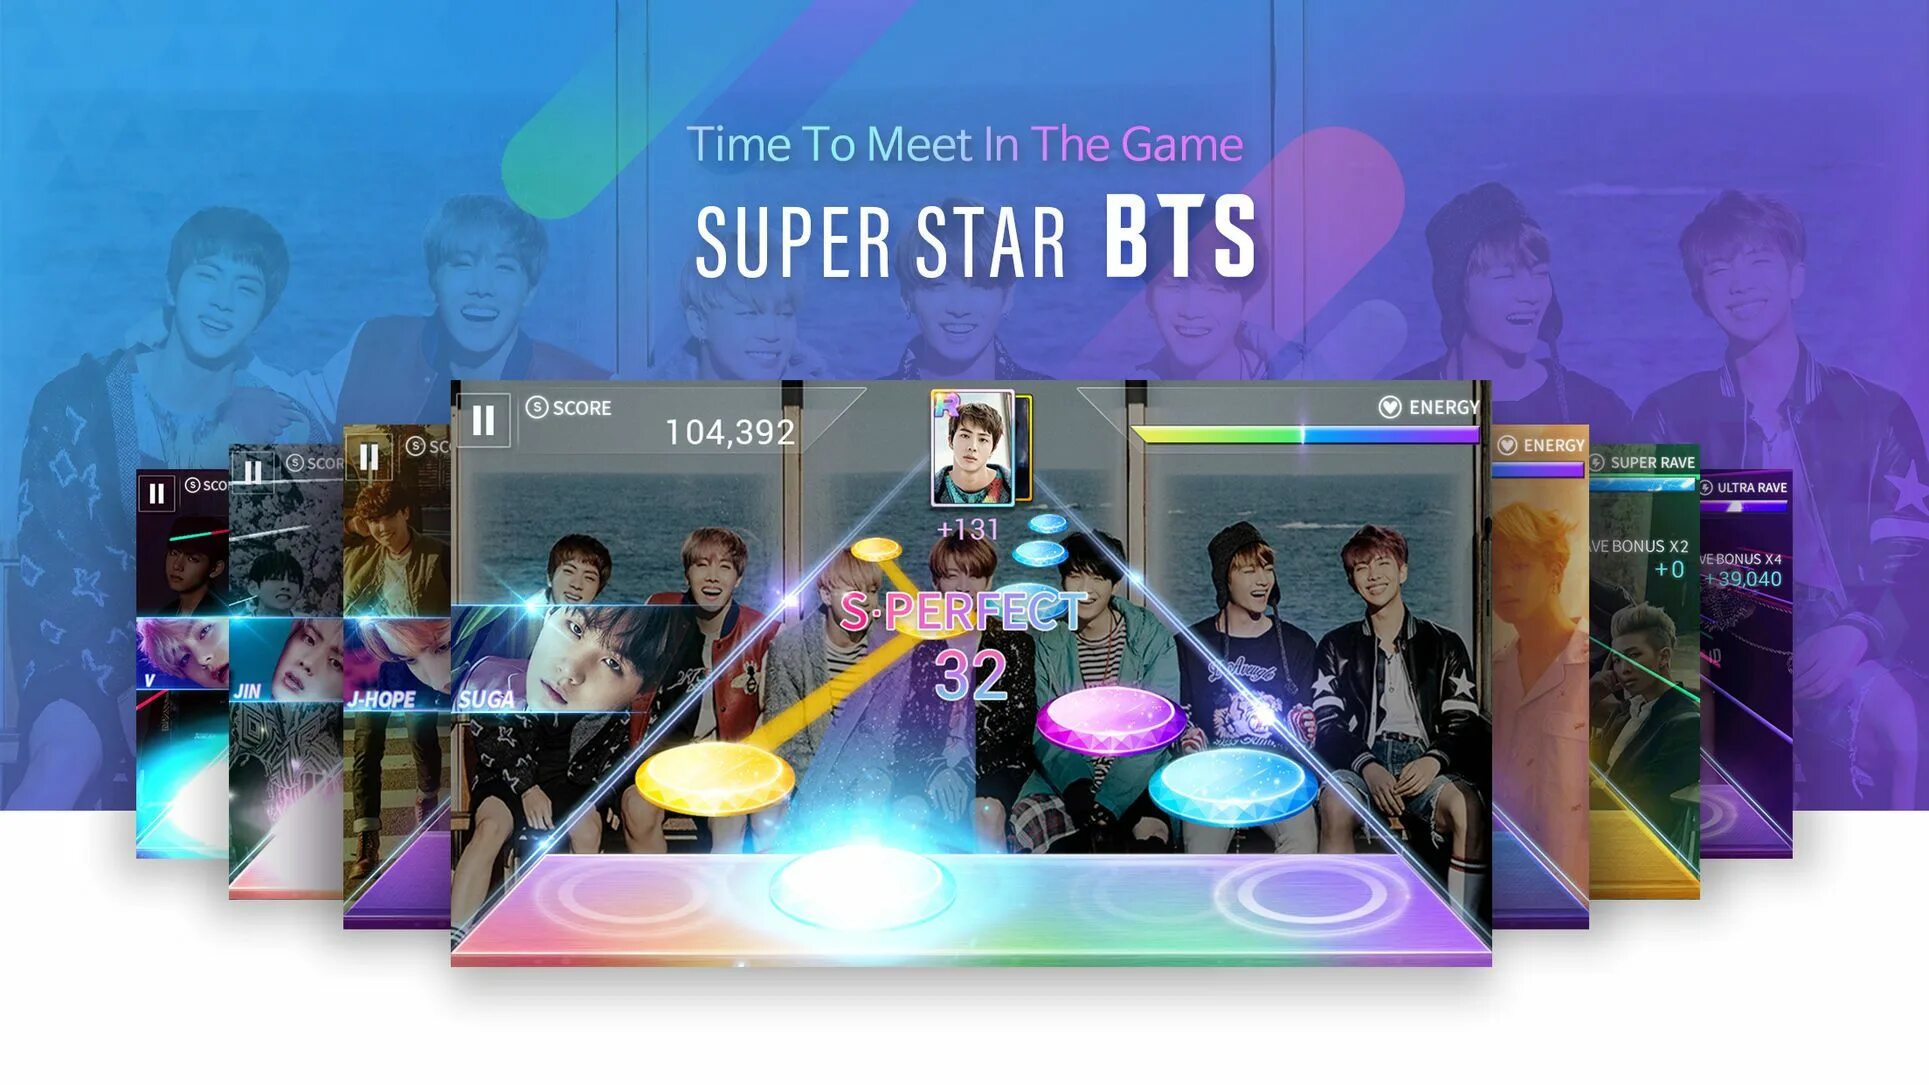 Bts super. BTS Star игра. Superstar BTS. БТС игры на андроид. Игра БТС музыкальная.